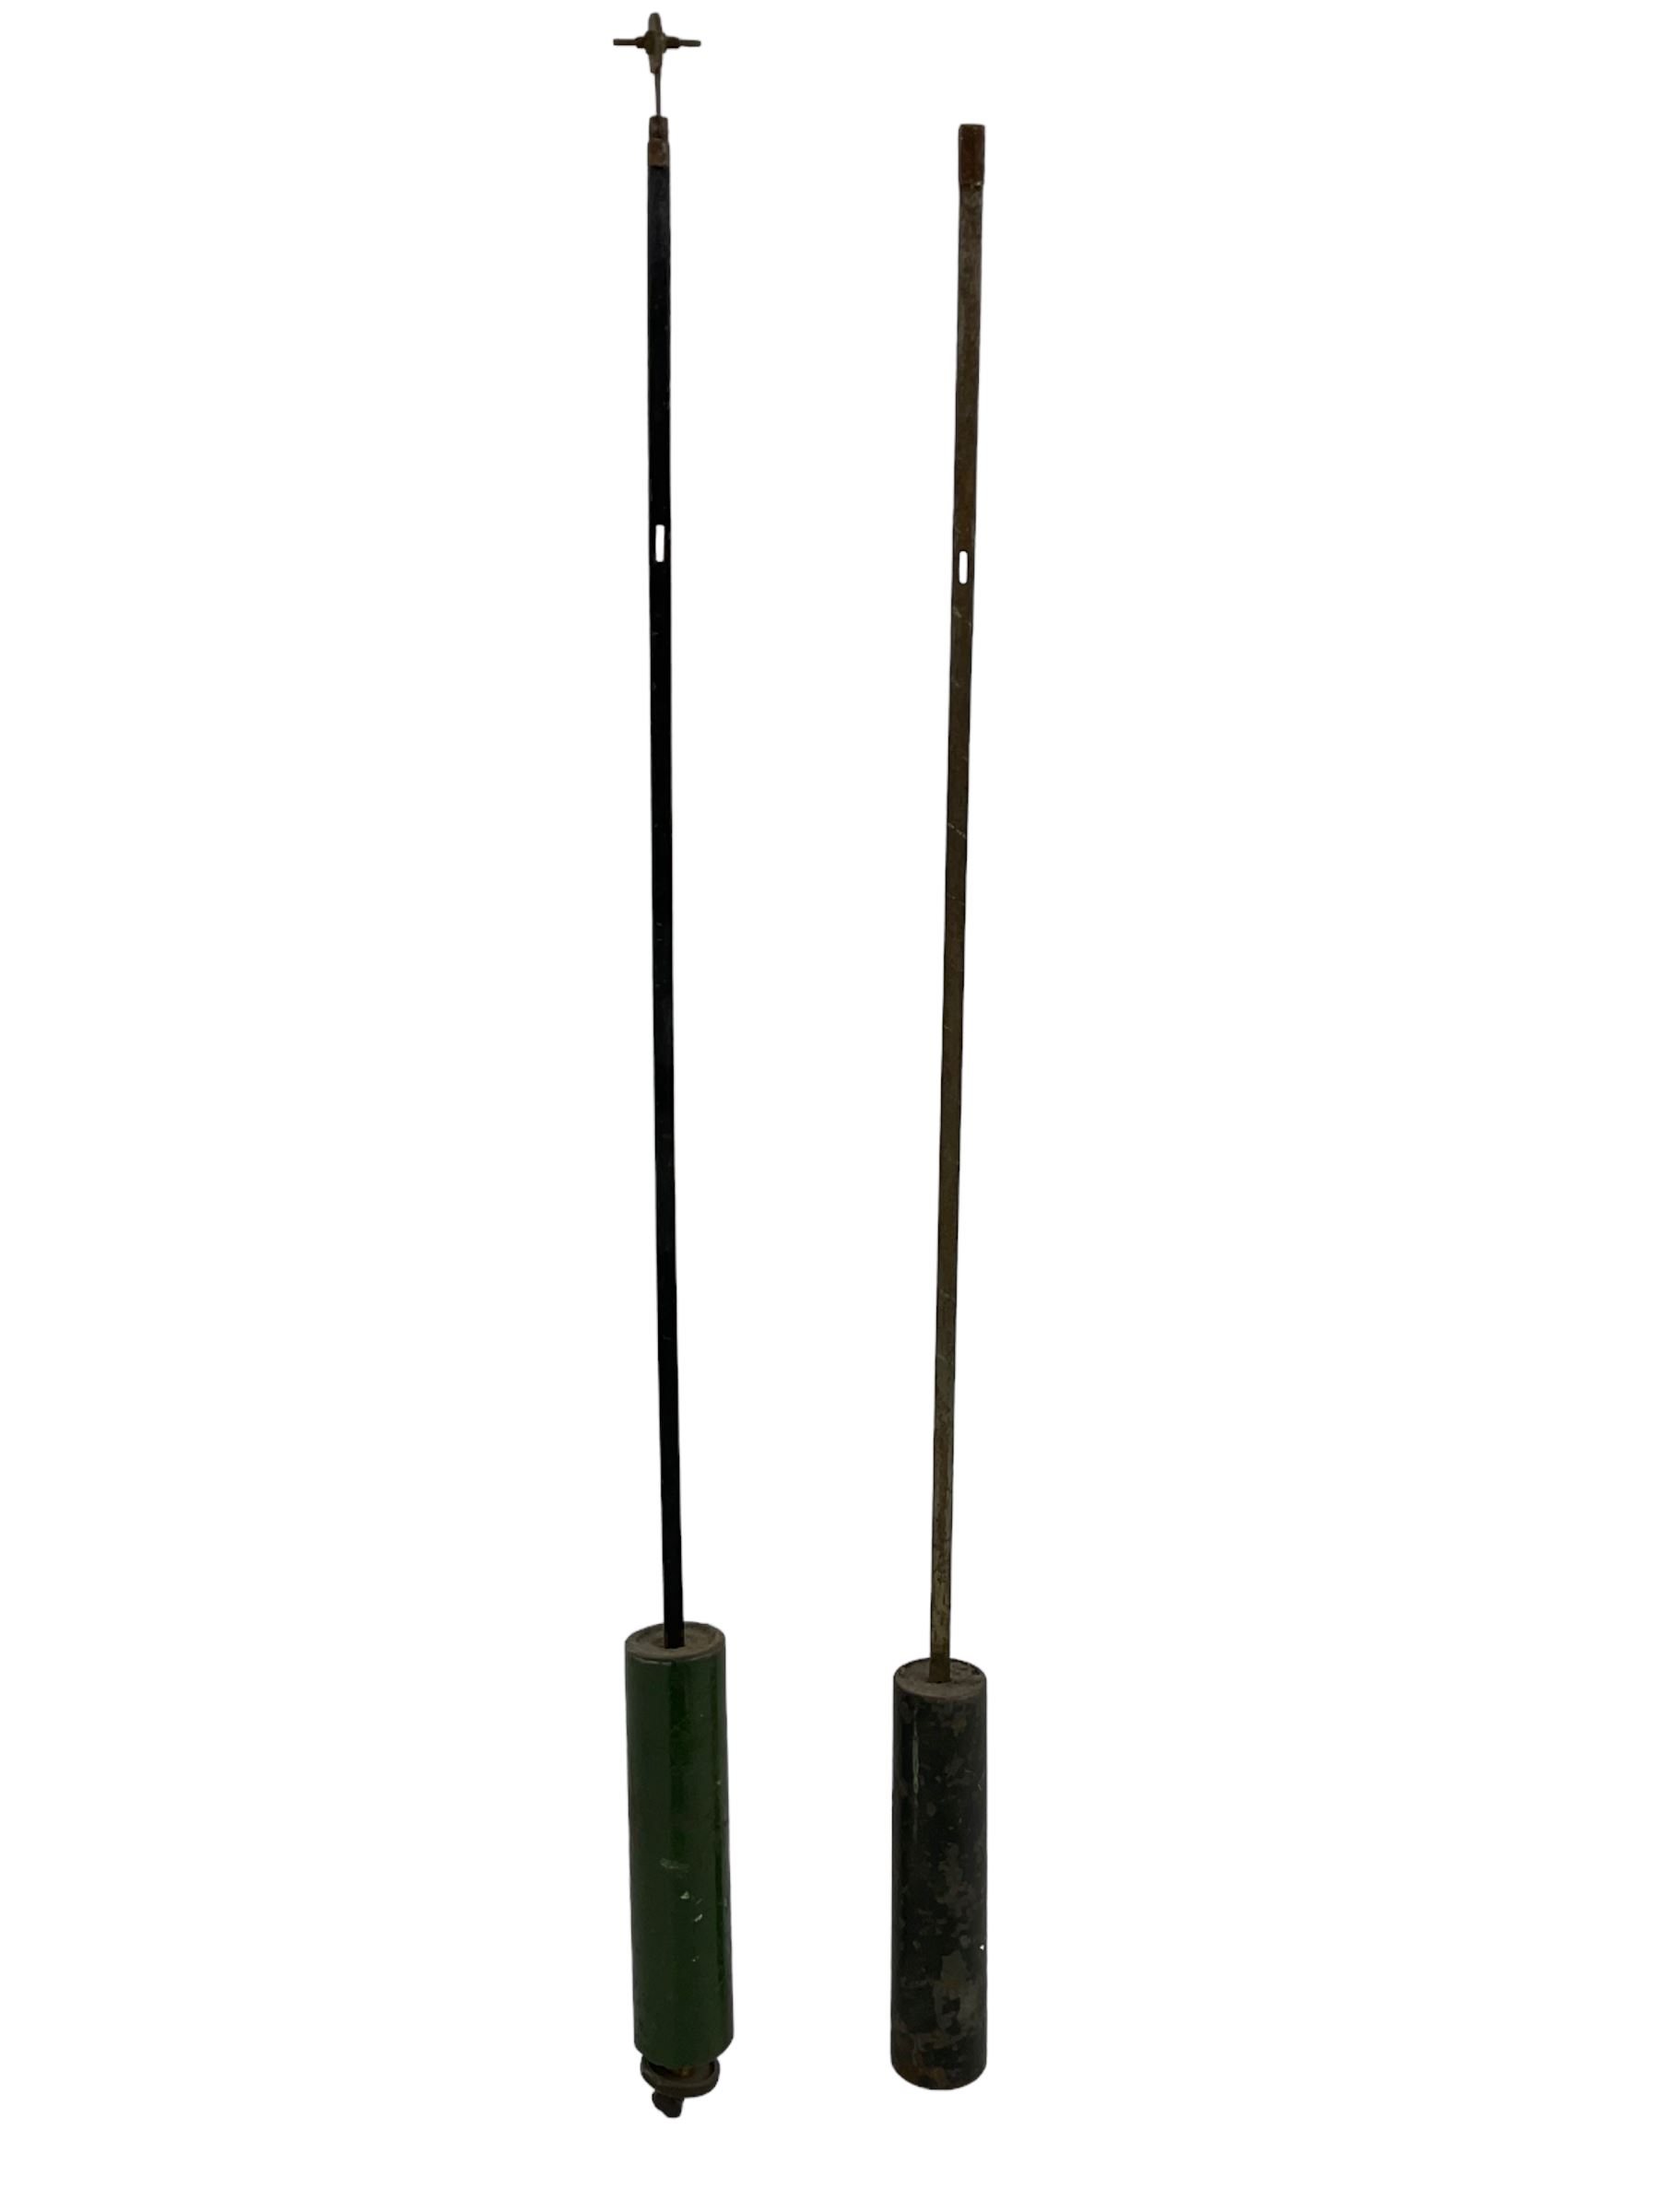 Two regulator pendulums